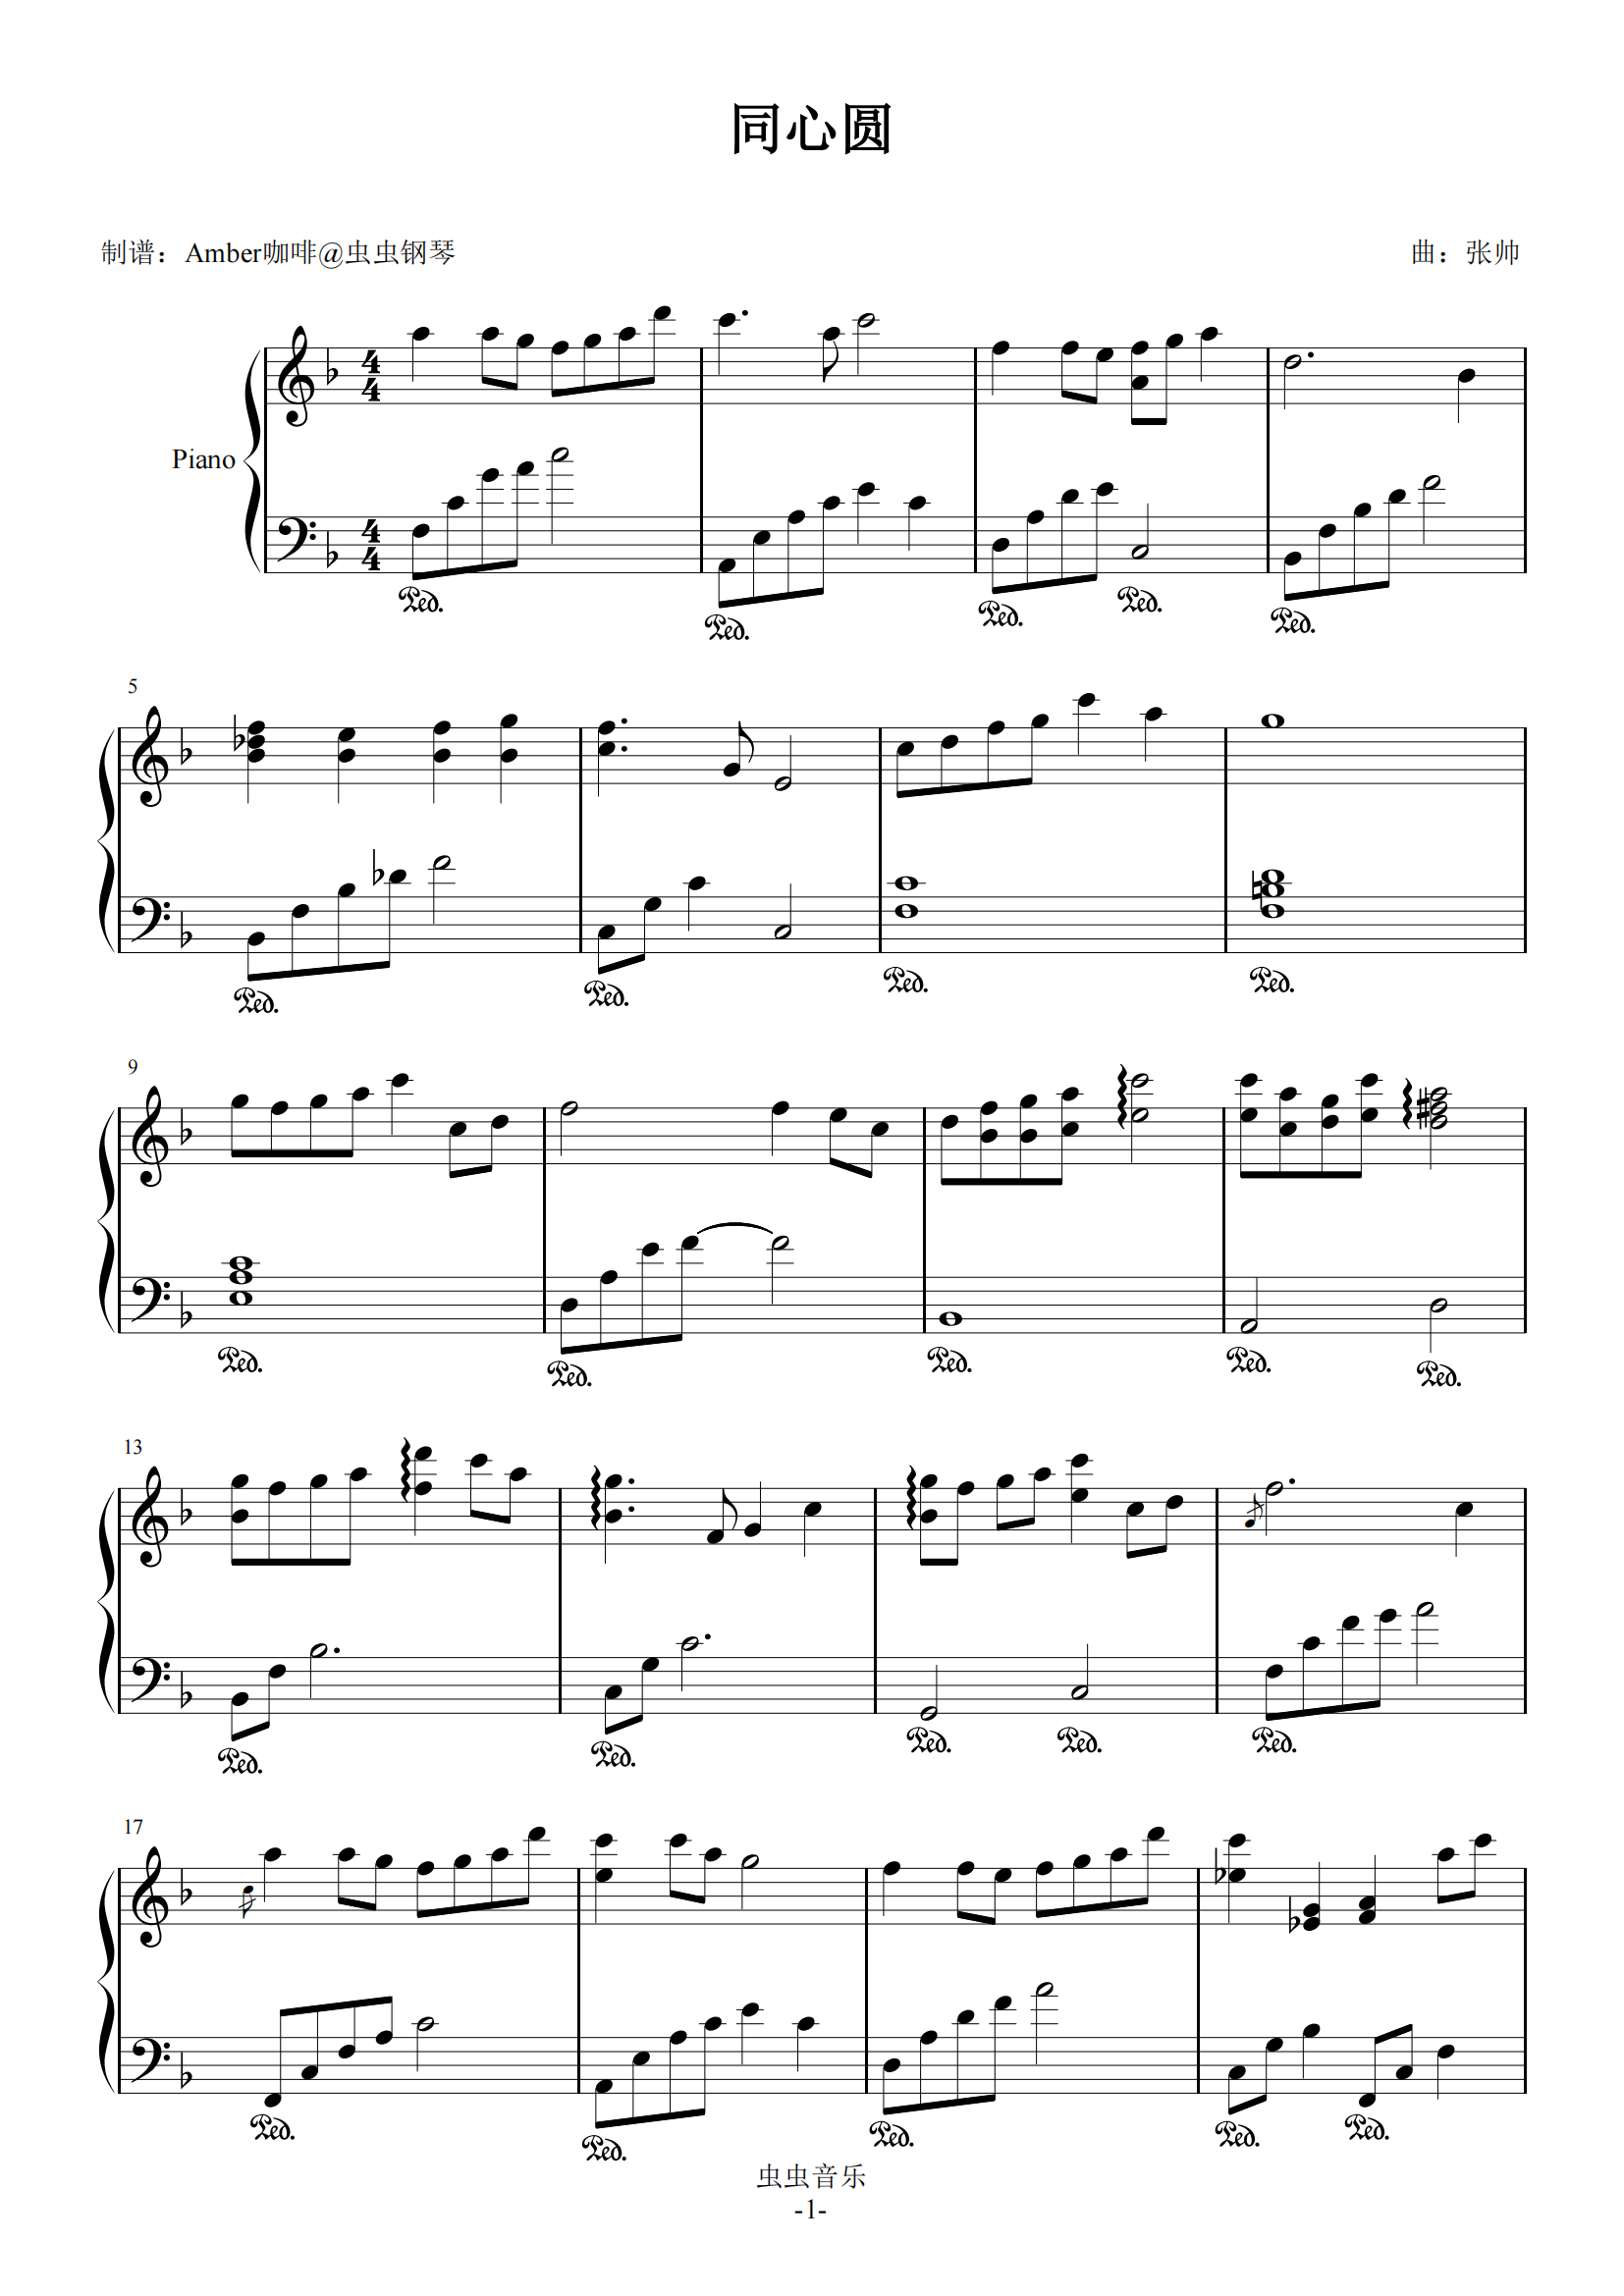 同心圆钢琴谱简易版-杨千嬅-虫虫钢琴